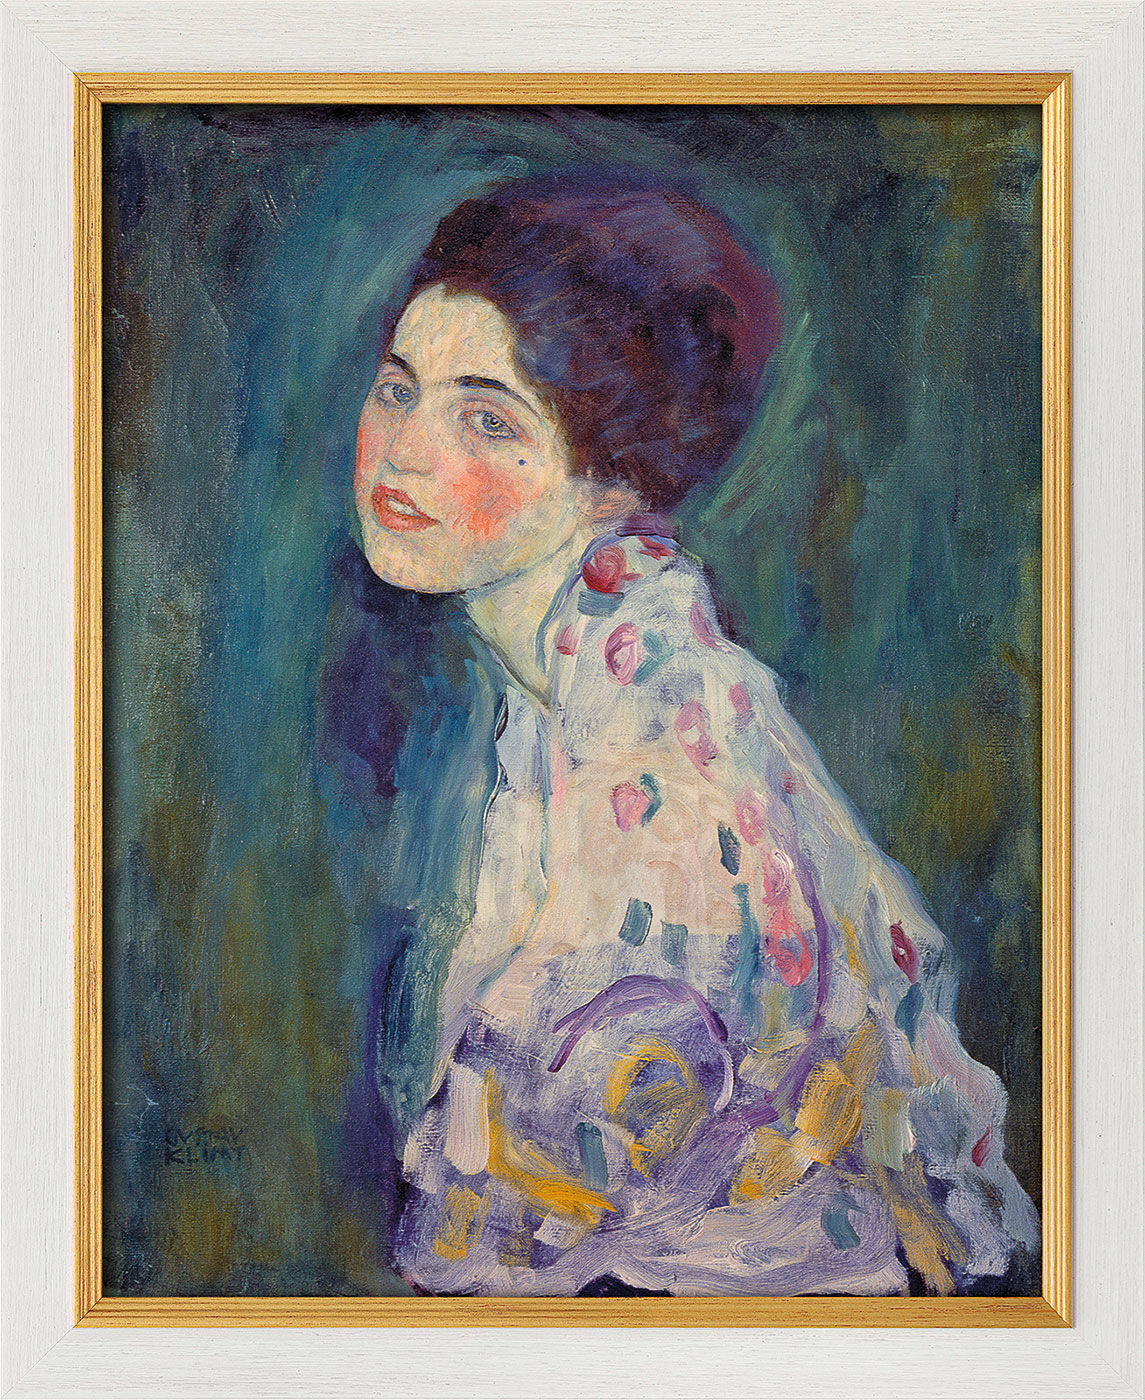 Bild "Bildnis einer Frau" (1916-18), gerahmt von Gustav Klimt